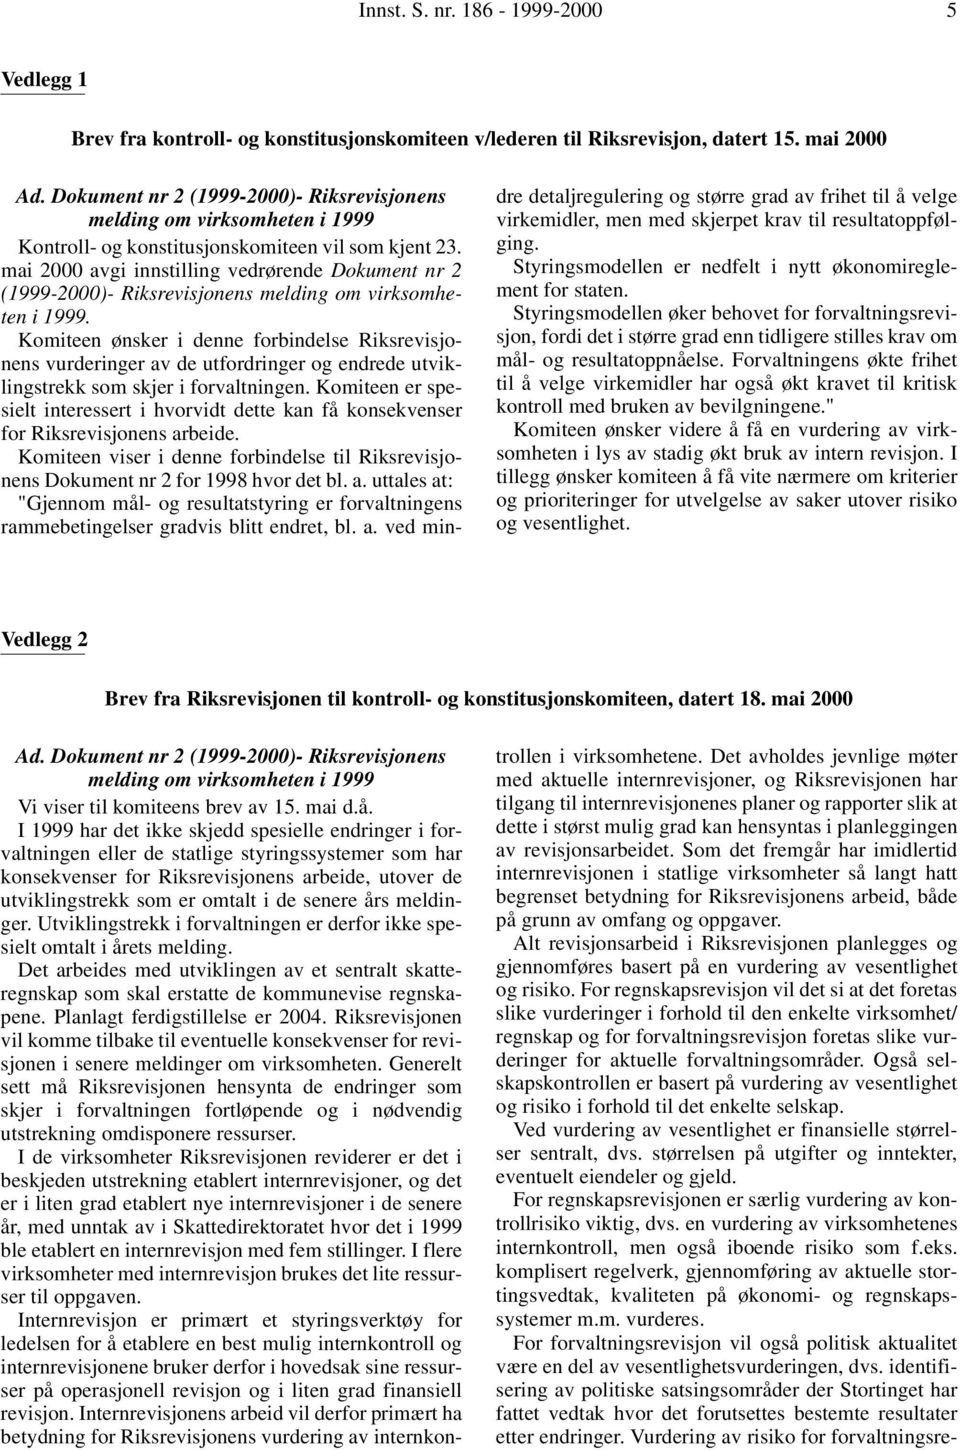 mai 2000 avgi innstilling vedrørende Dokument nr 2 (1999-2000)- Riksrevisjonens melding om virksomheten i 1999.